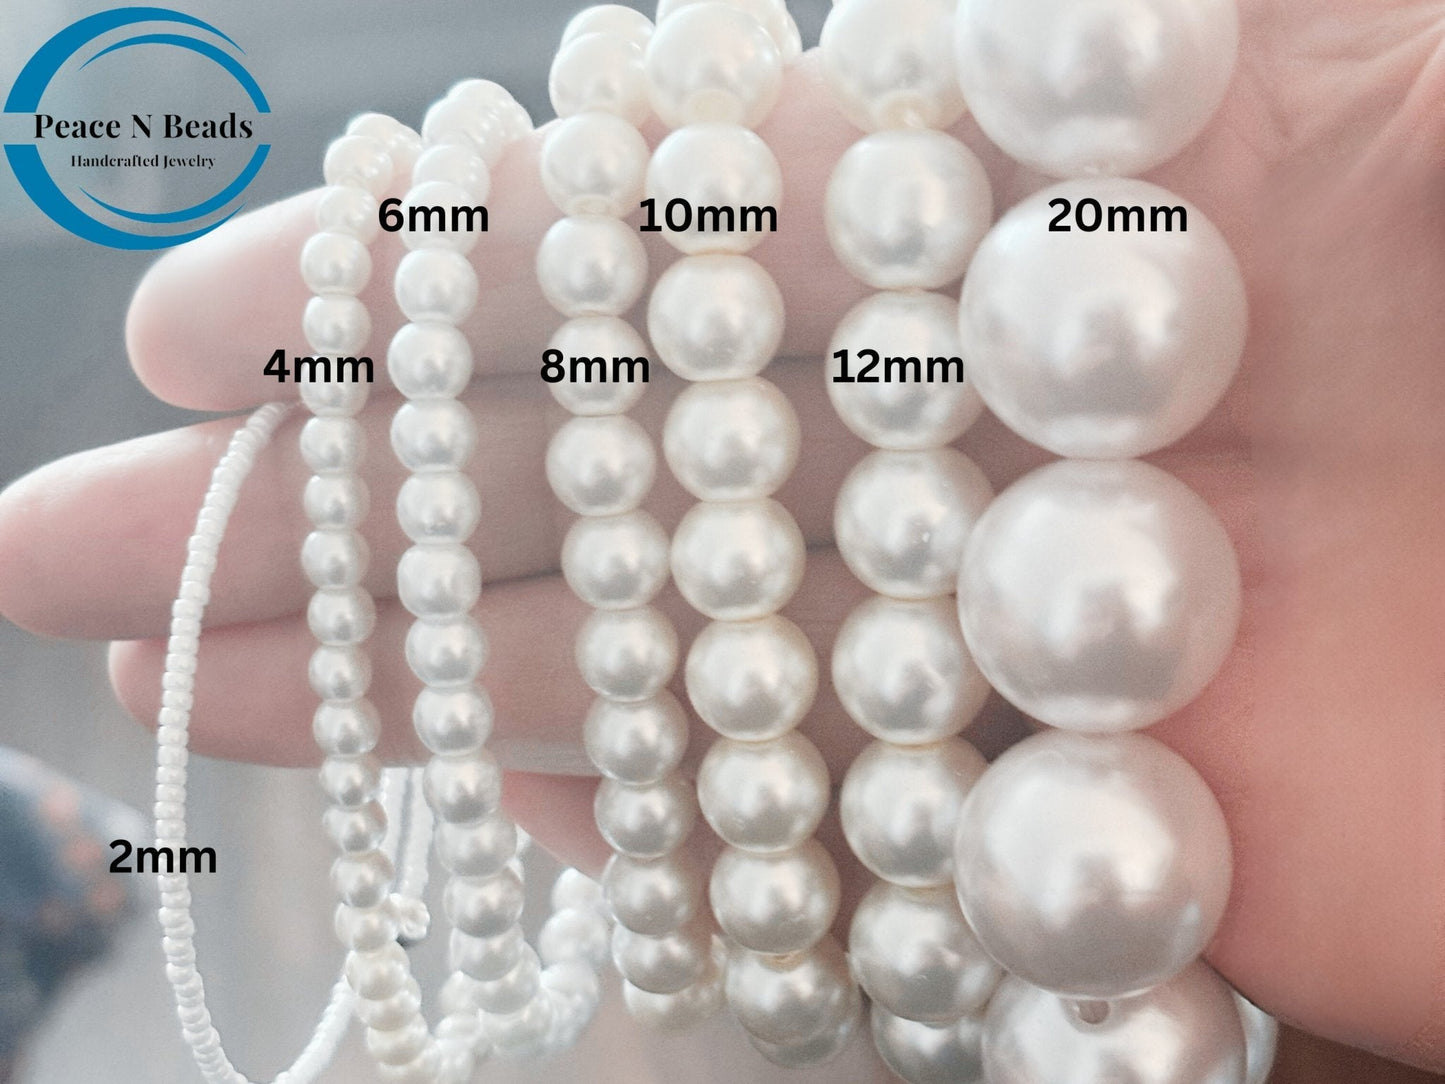 Buy the Large Pearl Hoop Earrings - Peace N Beads